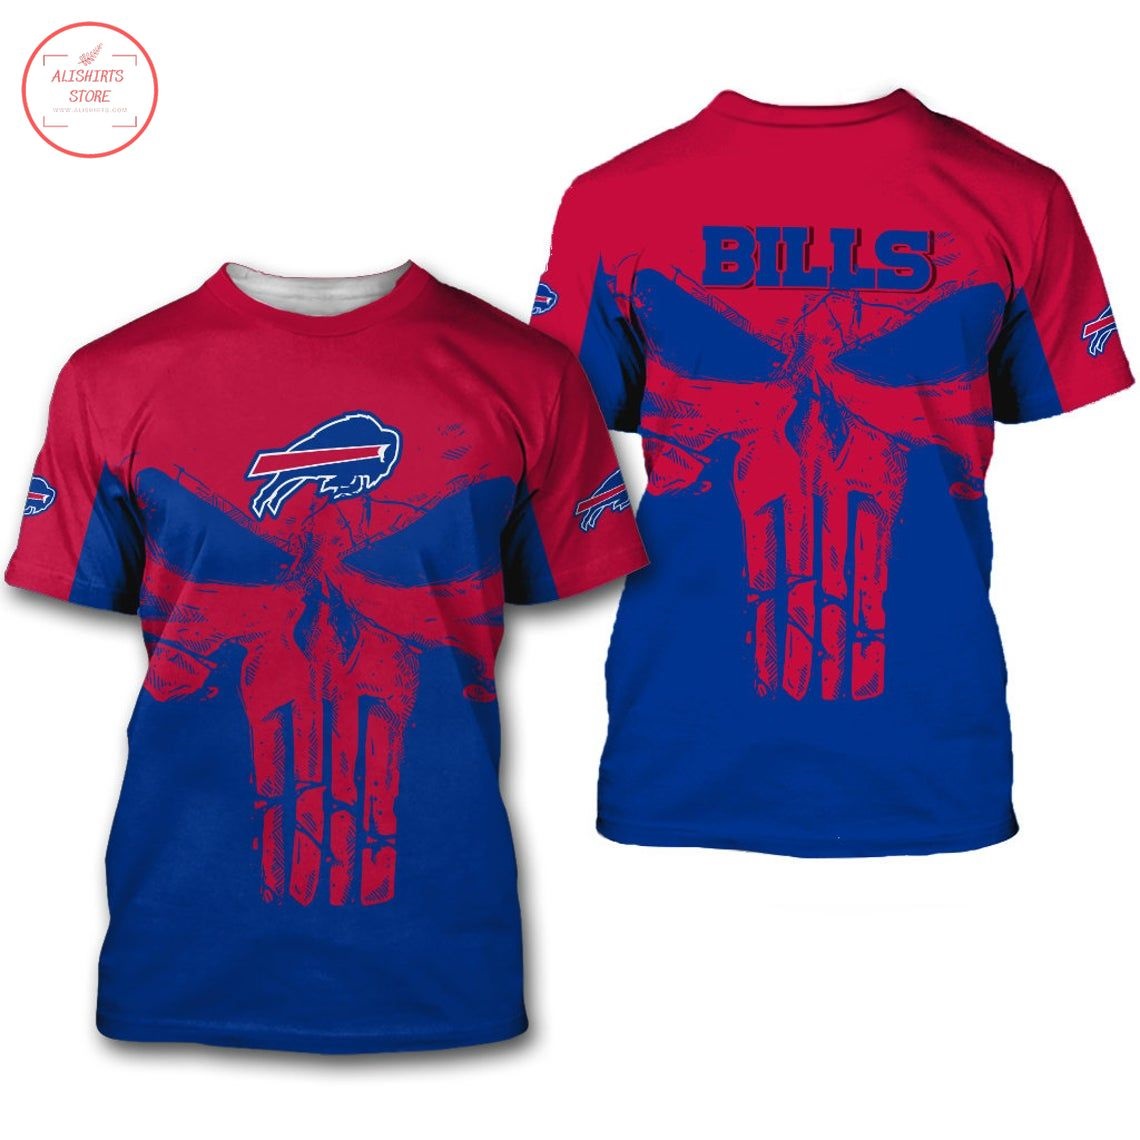 Buffalo Bills NFL Punisher Skull Shirt